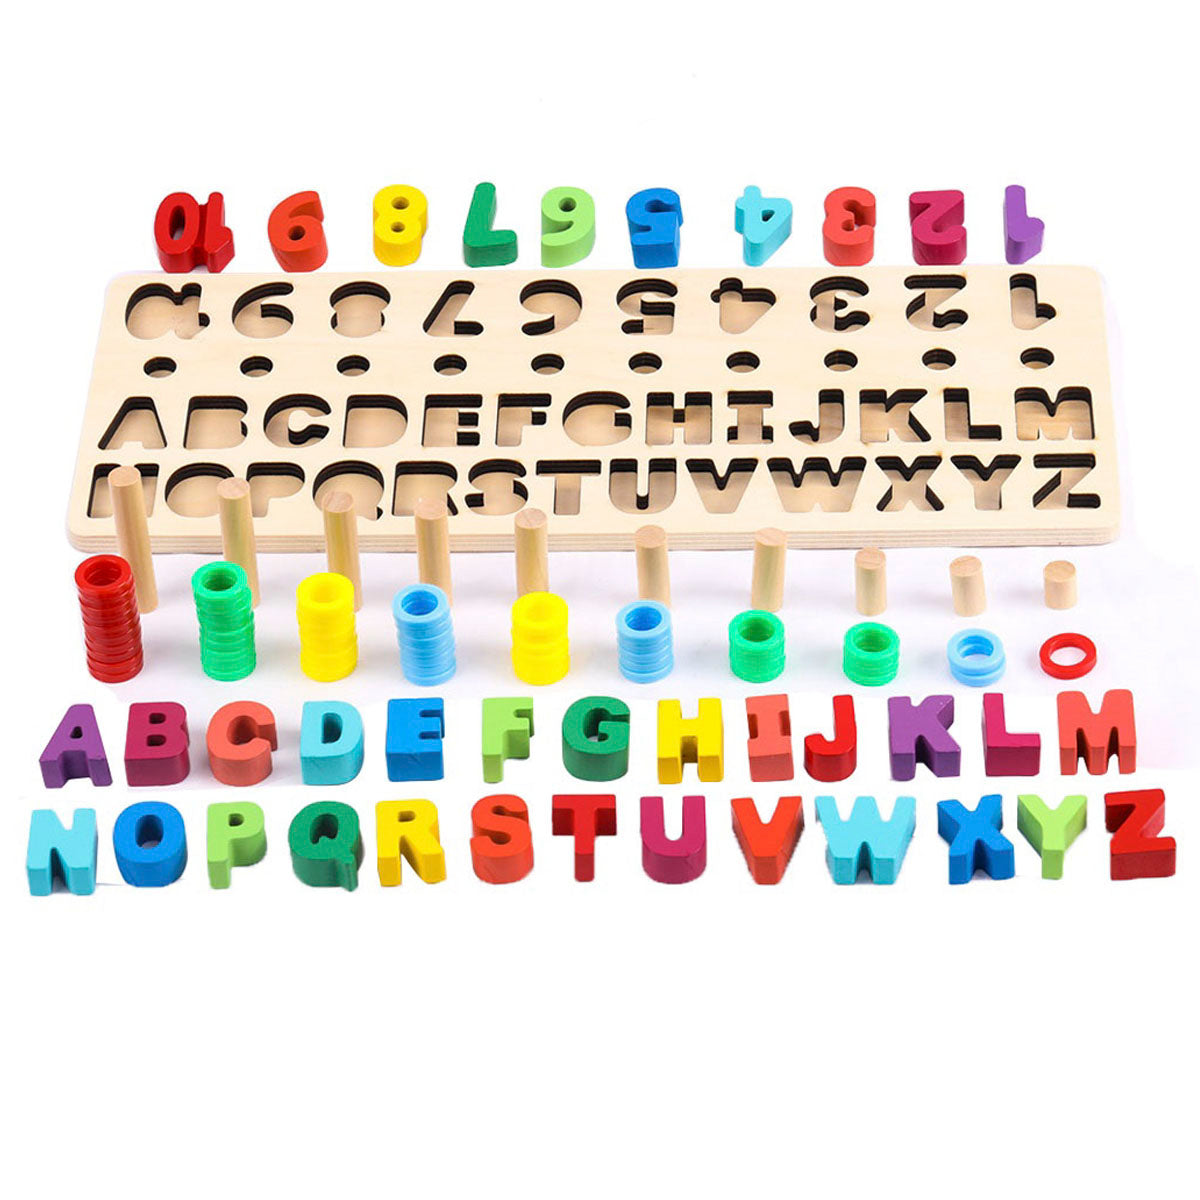 Sendida Alphabet Number Montessori Toys Wood Puzzles ABC Letters Educa -  Sdida